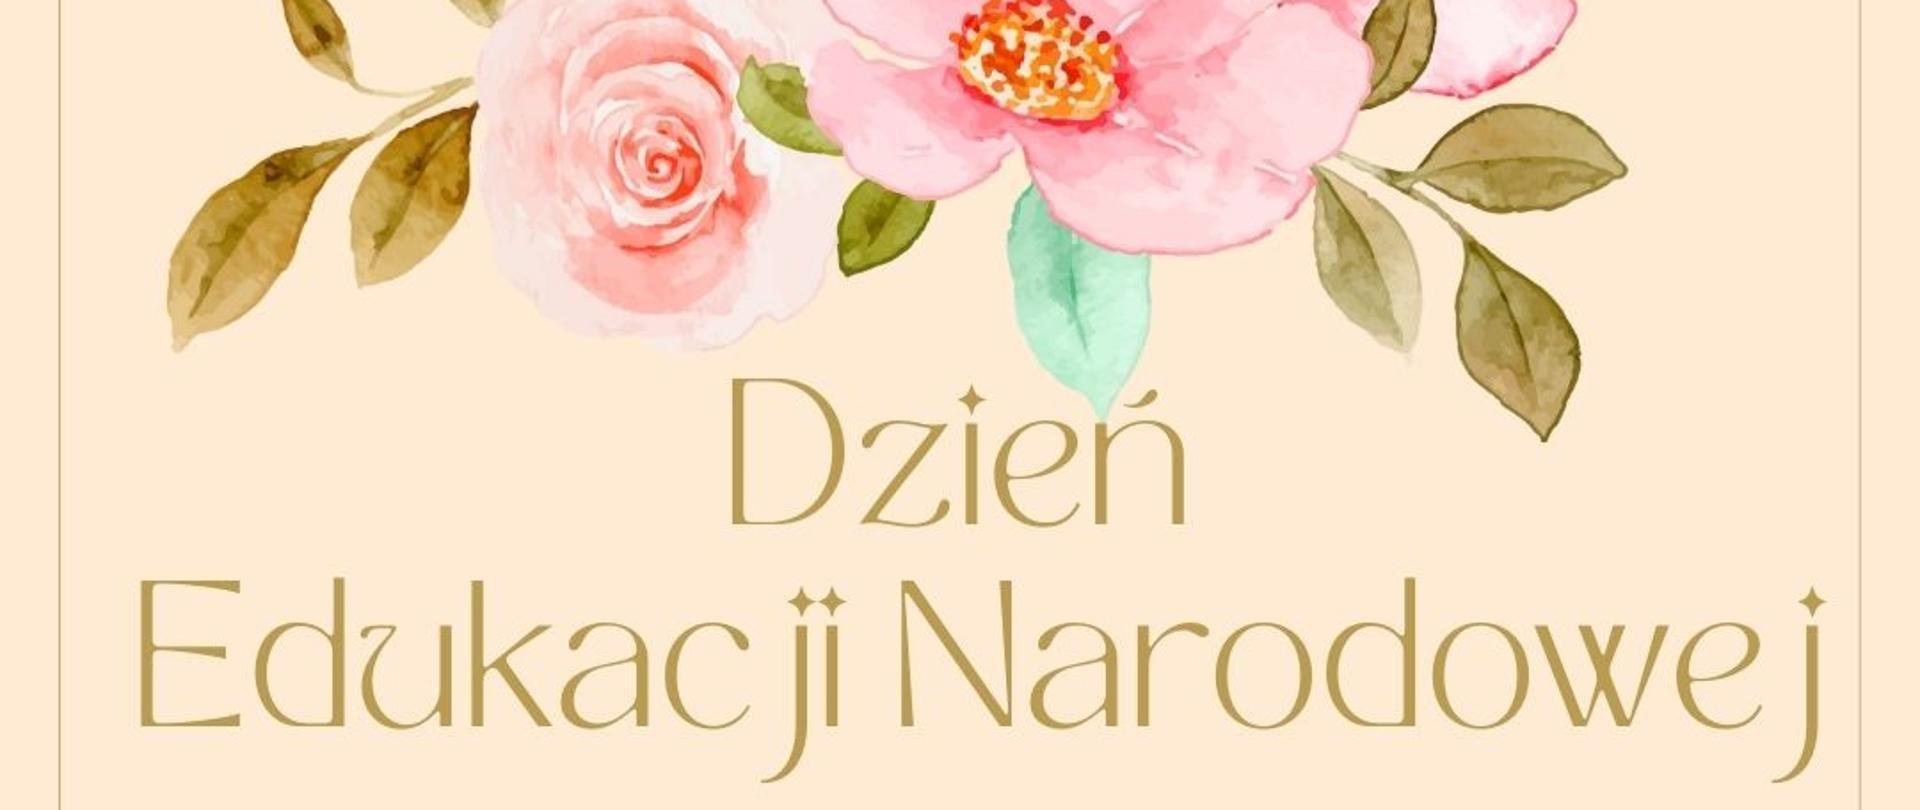 Grafika przedstawia napis: "Dzień Edukacji Narodowej" na złotym tle pod kolorowymi kwiatami